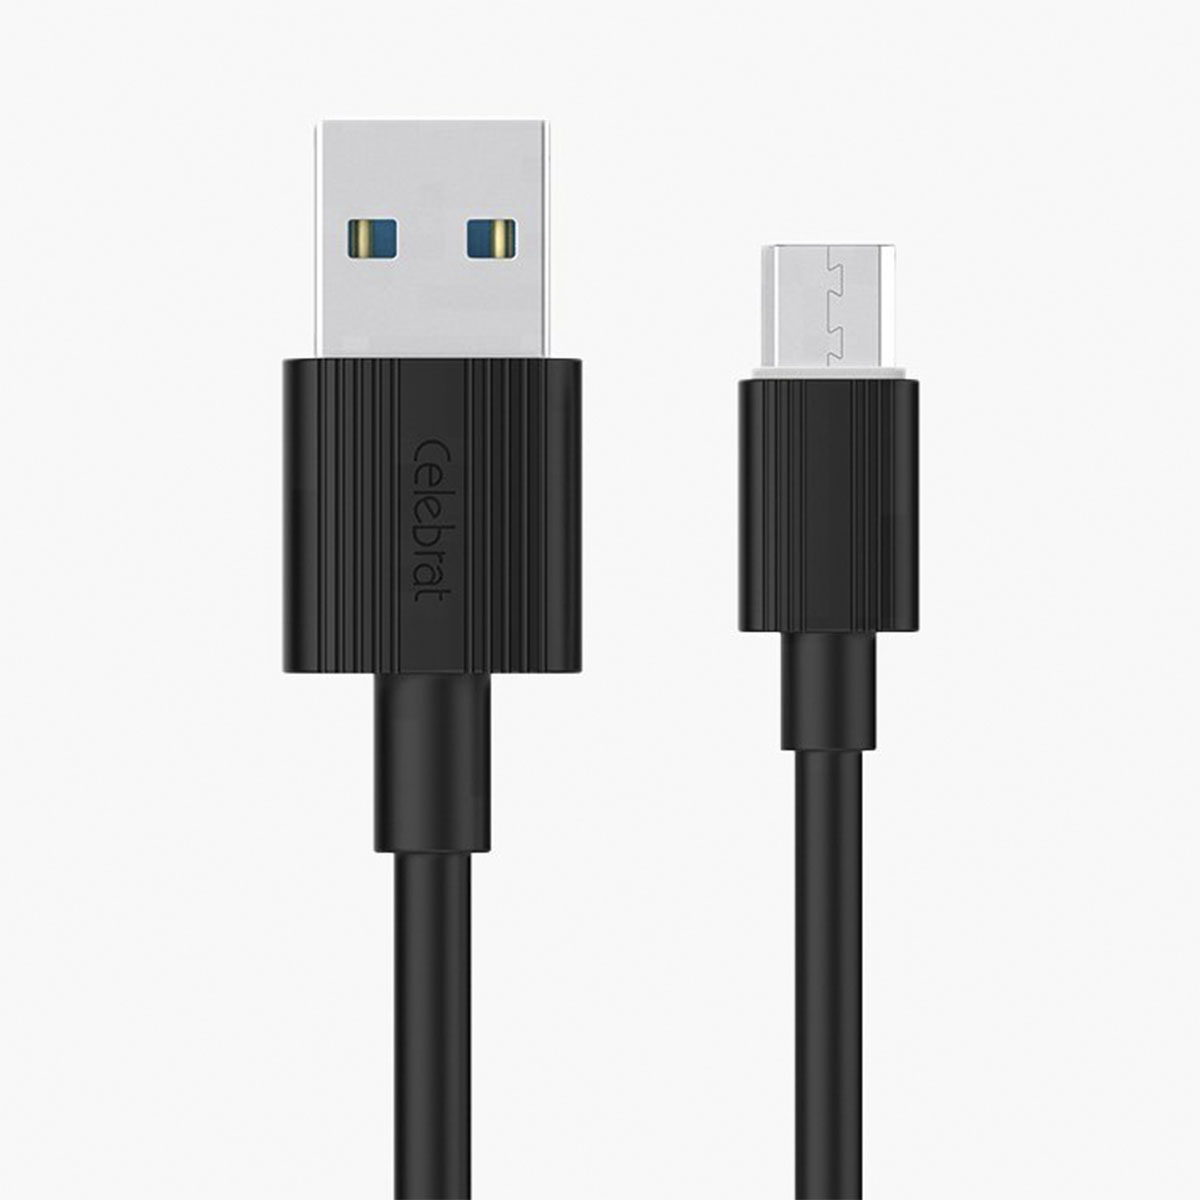 Кабель Micro USB, Celebrat CB-09M, длина 1 метр, цвет черный